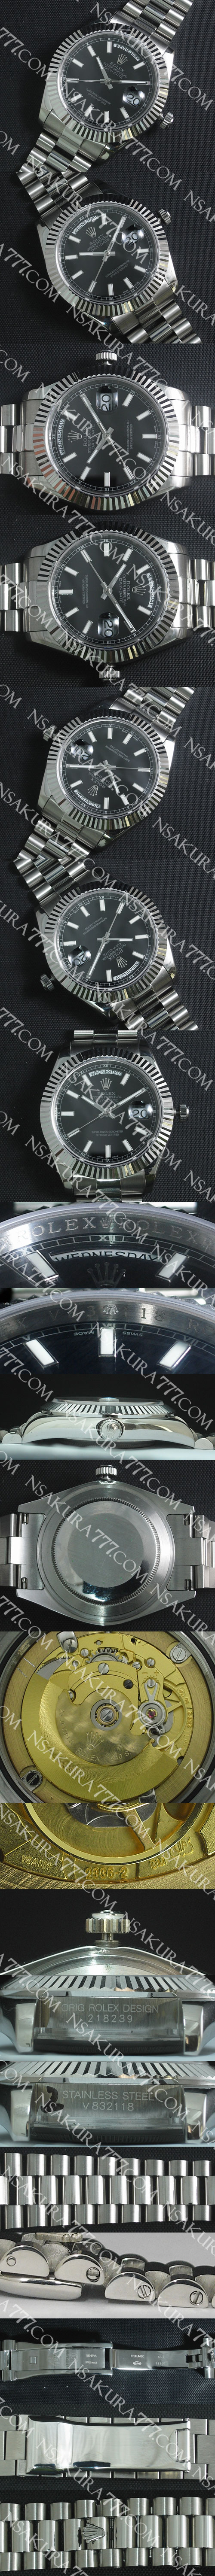 レプリカ時計ロレックス デイデイト II Swiss 2836-2 - ウインドウを閉じる